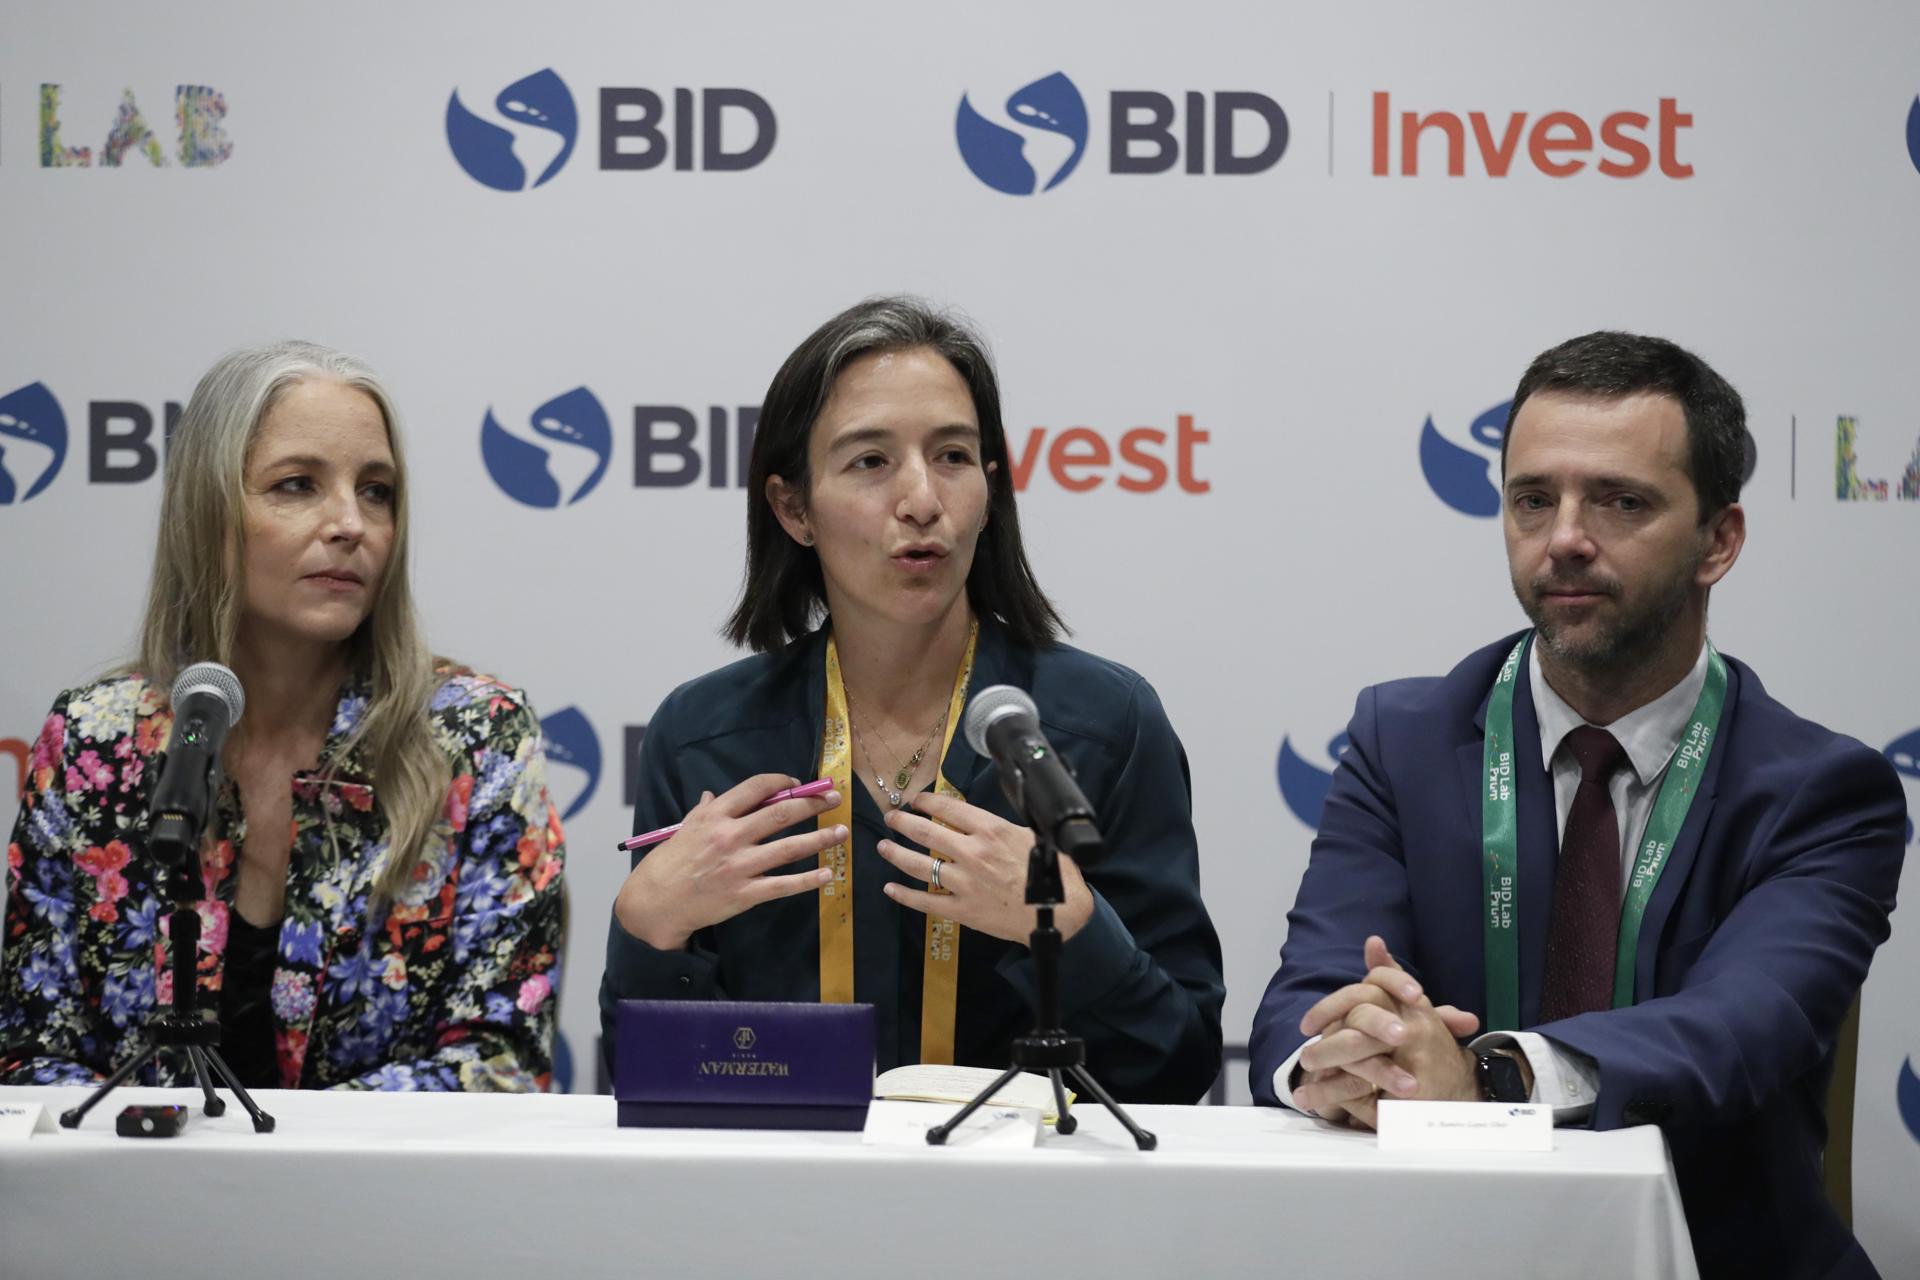 El presidente del BID señala tres desafíos de América Latina que la innovación puede resolver